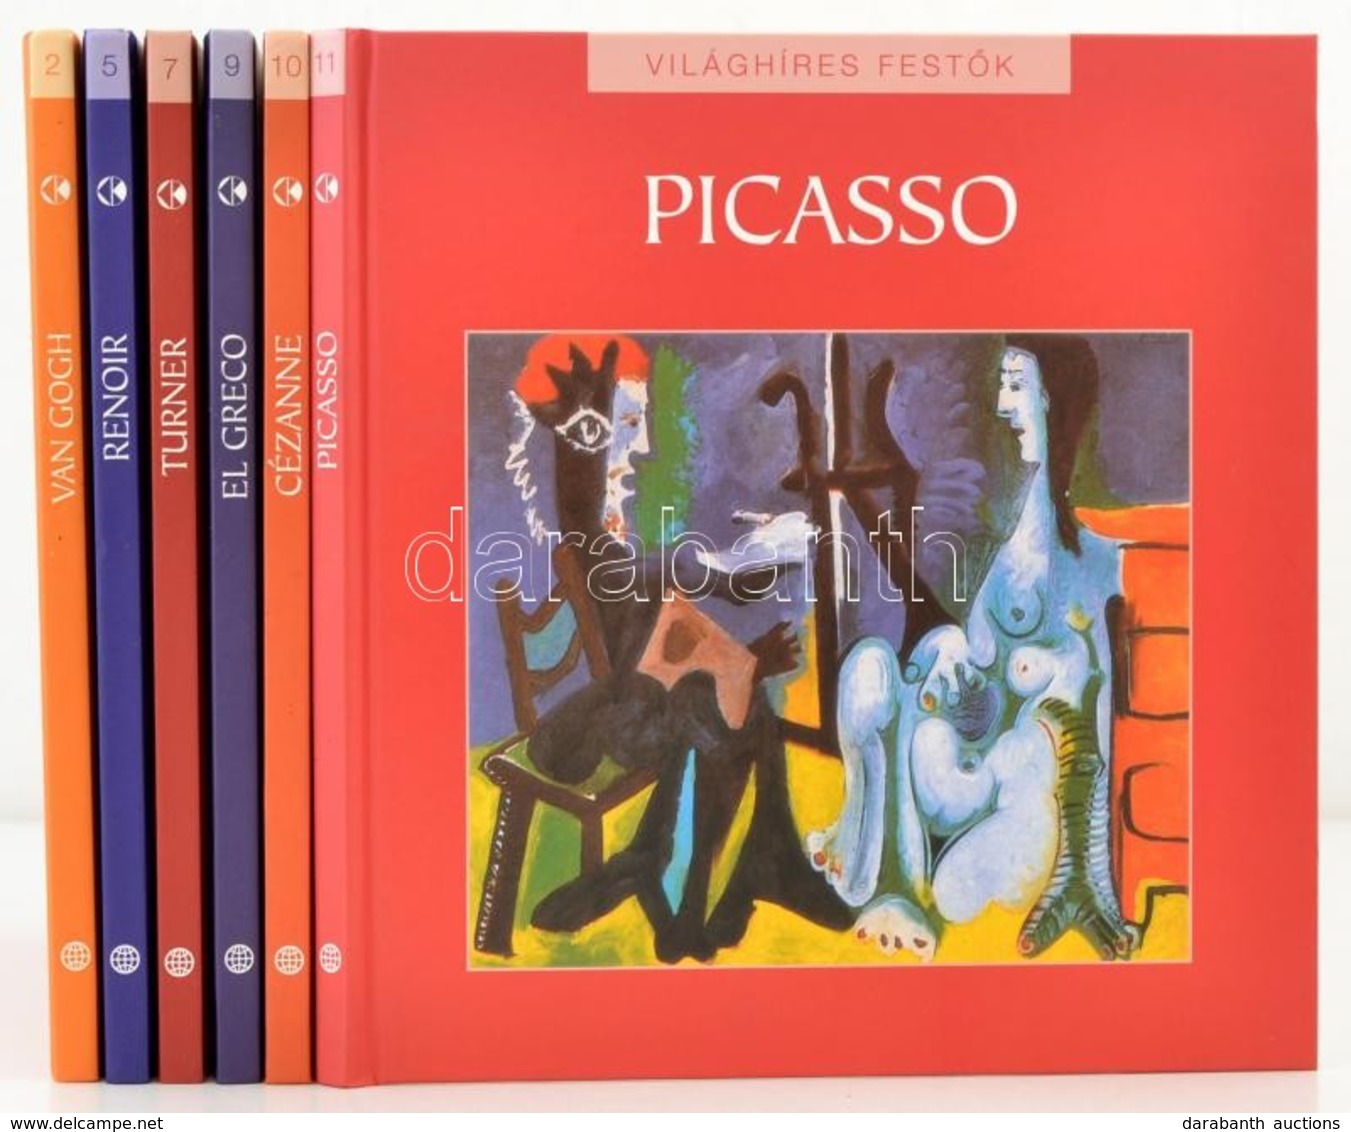 Világhíres Festők Sorozat 6 Kötete.
2. Van Gogh
5. Renoir
7. Turner
9. El Greco
10. Cézanne
11. Picasso.
Bp., 2010, Koss - Ohne Zuordnung